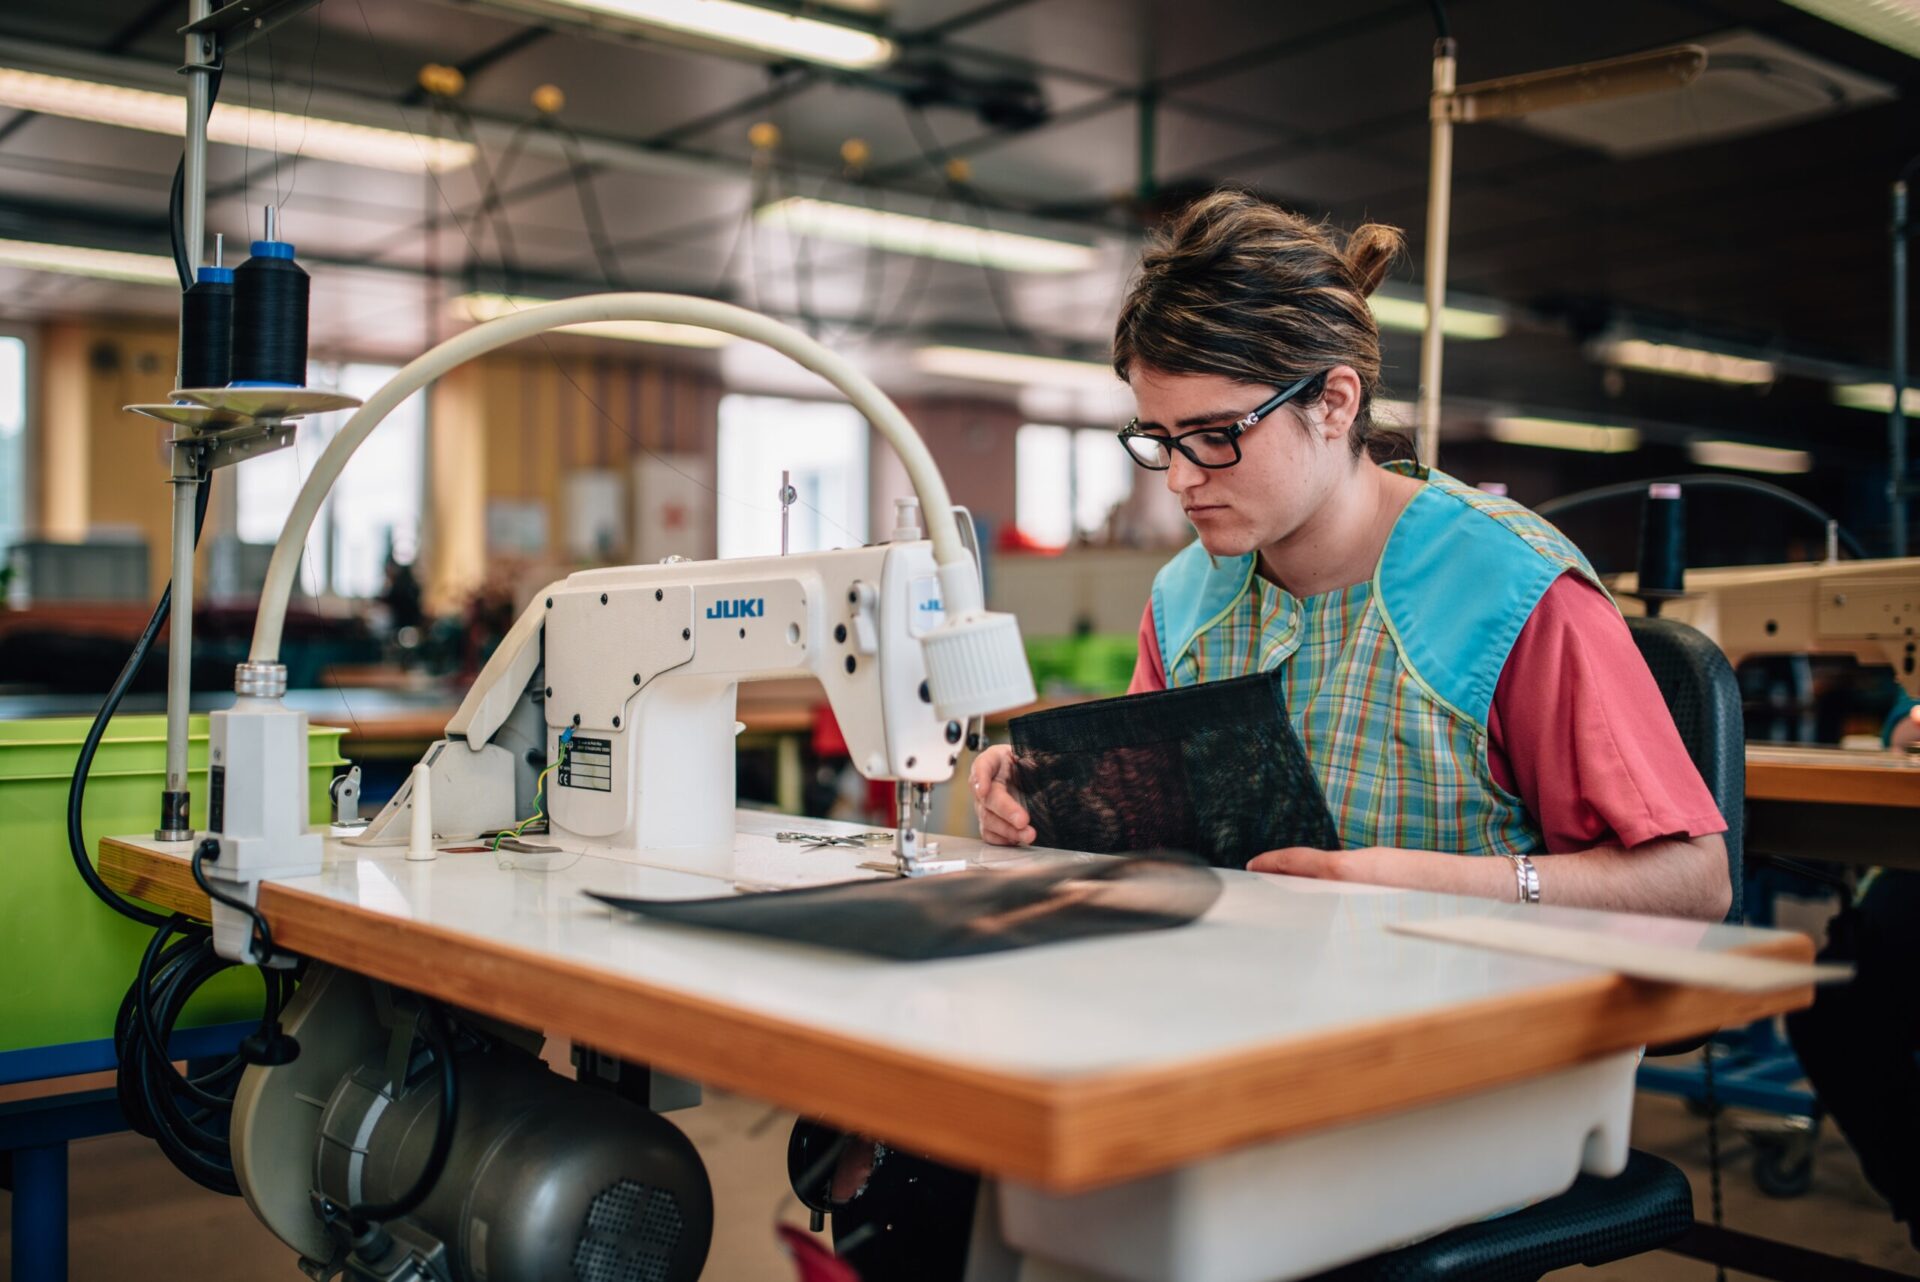 Présentation Atelier Couture : personne handicapée en train de faire de la couture sur une machine à coudre industrielle